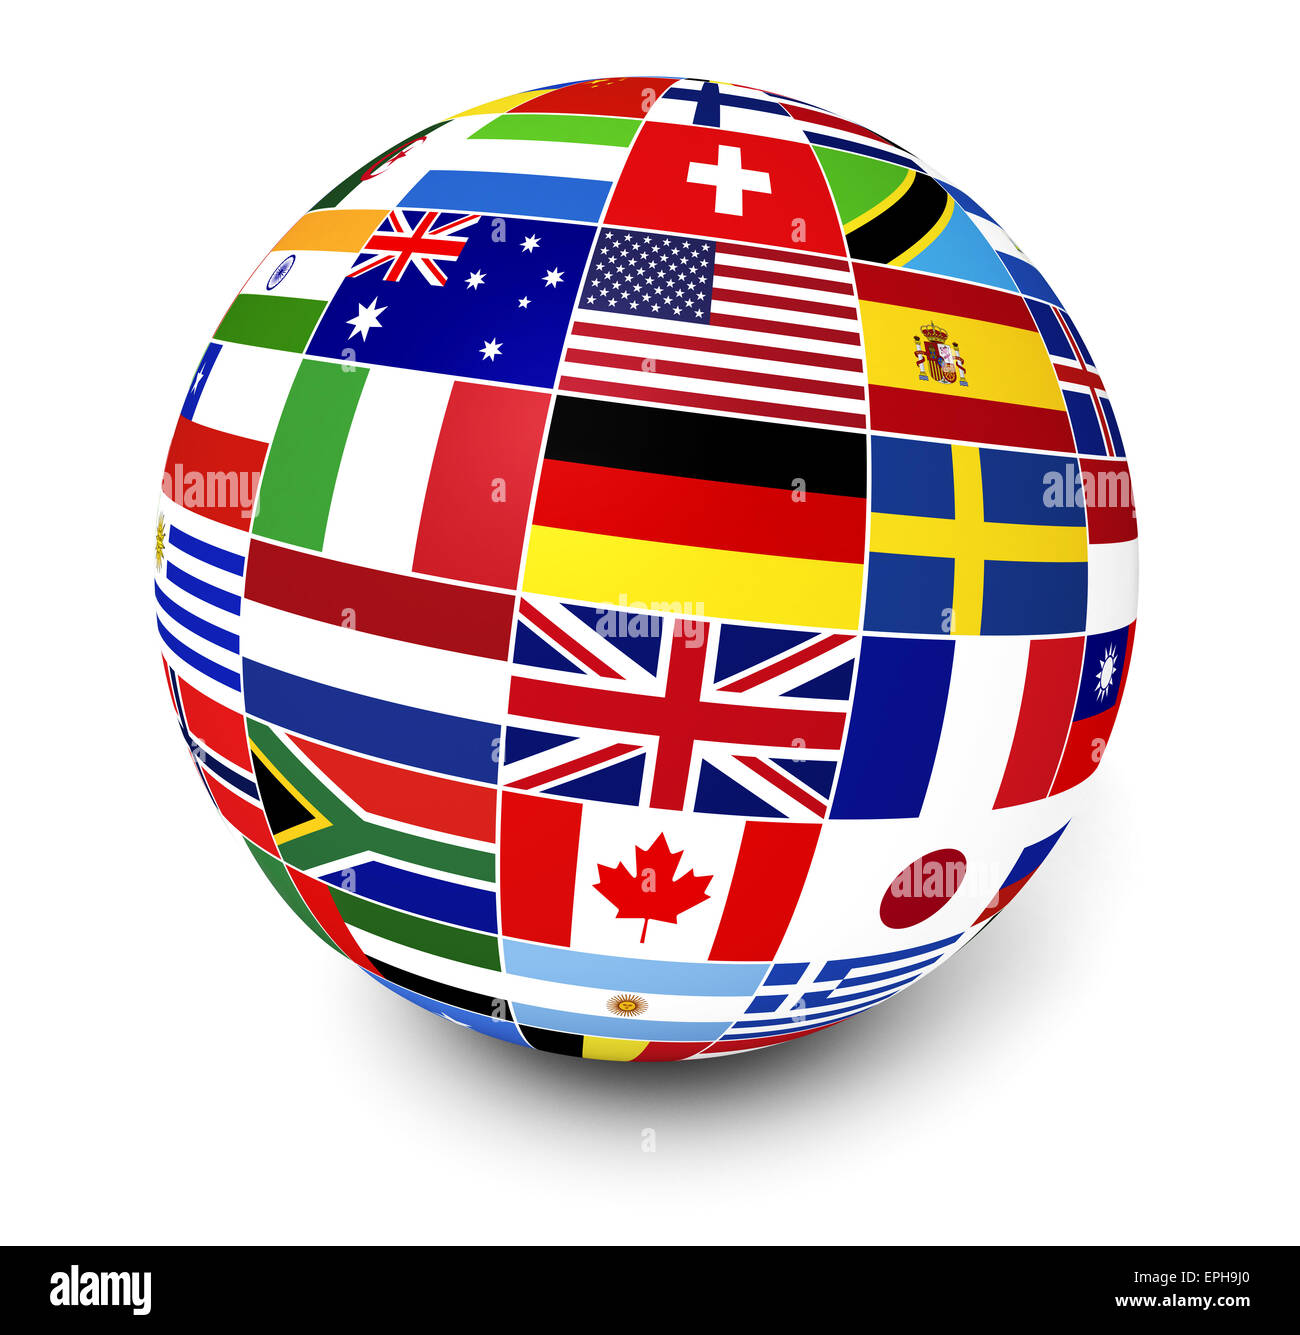 Reisen, Dienstleistungen und internationalen Business-Management-Konzept mit einem Globus und internationalen Flaggen der Welt. Stockfoto